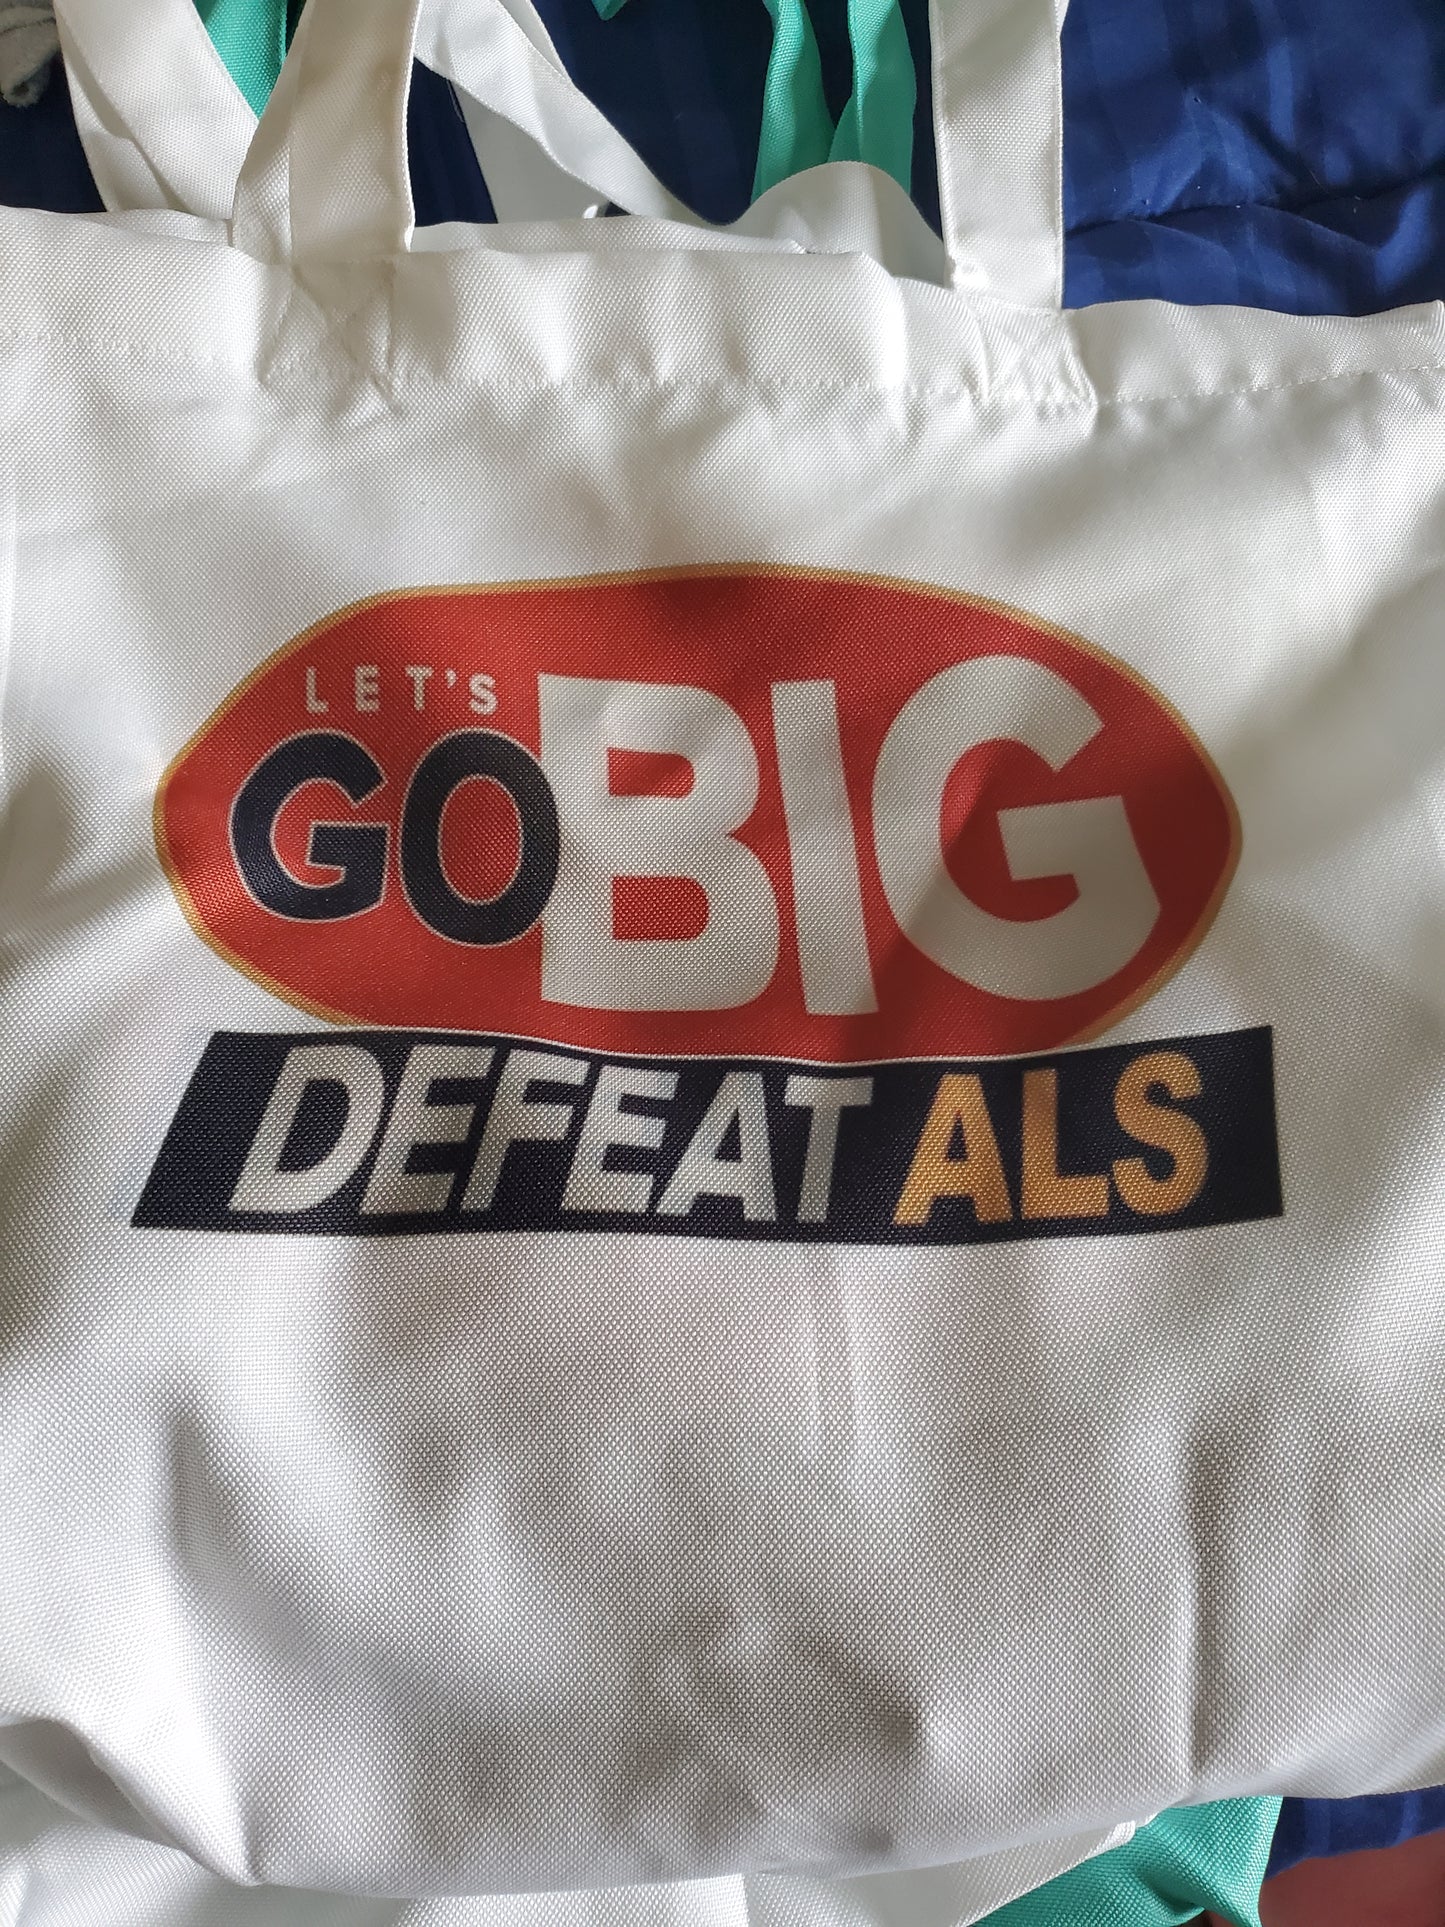 GO BIG DEFEAT ALS TOTE